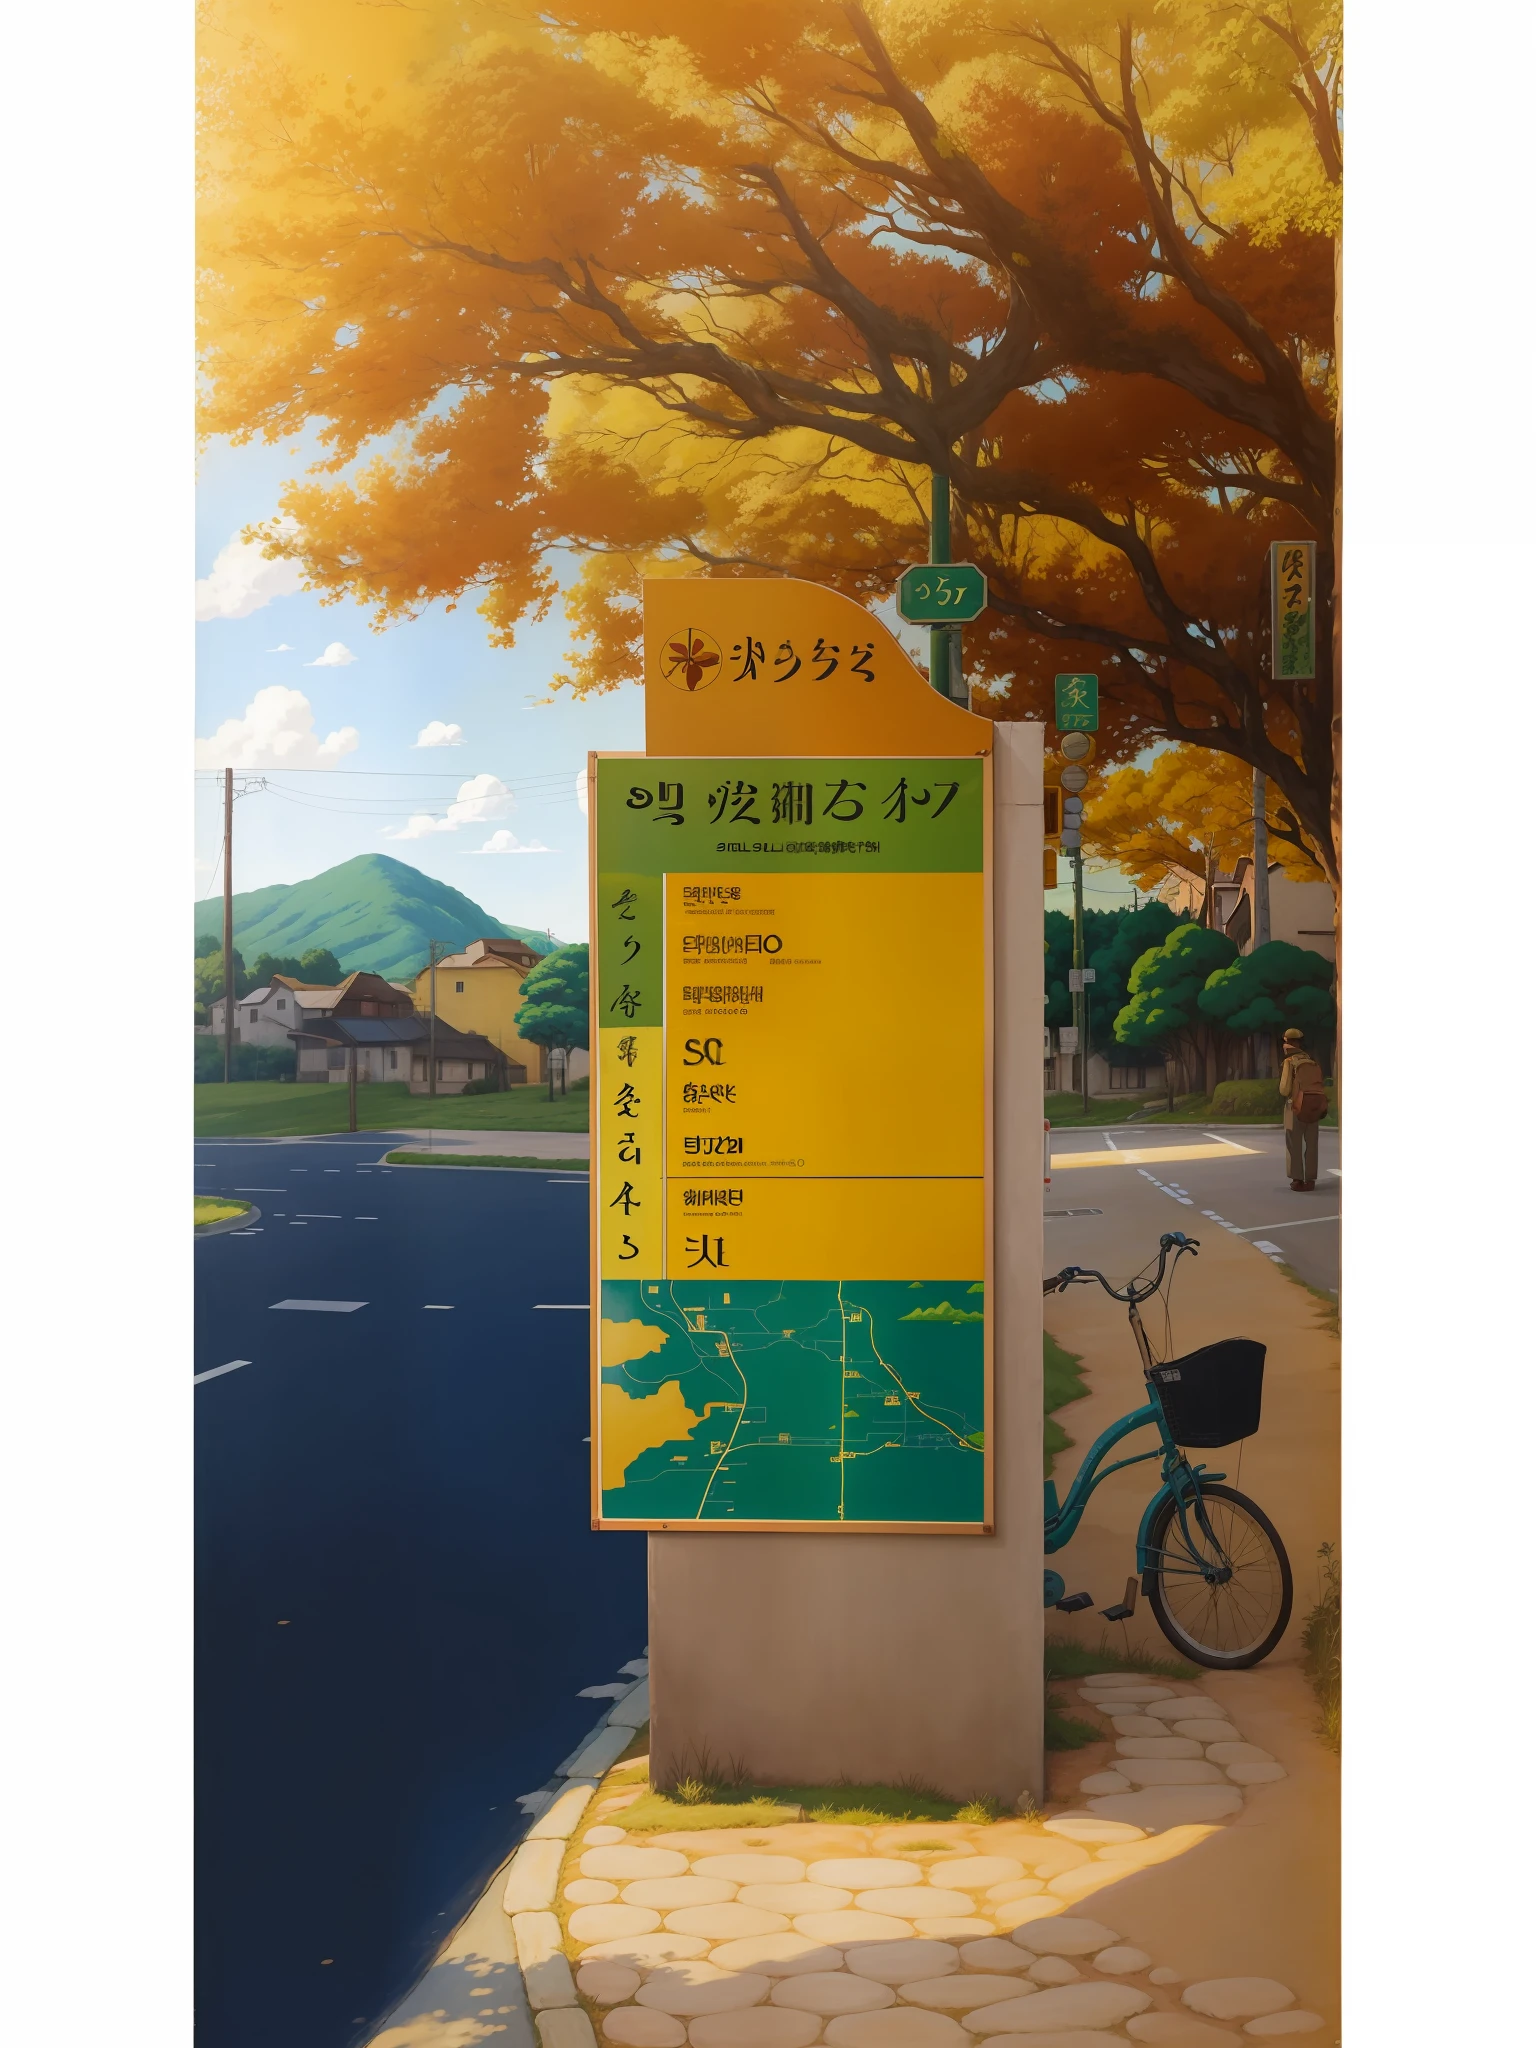 真实的, 真实的, 美丽而令人惊叹的风景油画宫崎县吉卜力工作室路边标志, street print 海报, 温暖的阳光, 海报, 户外, 作者 Lee Jae, 阳光, 手工制作的, 地图--v6